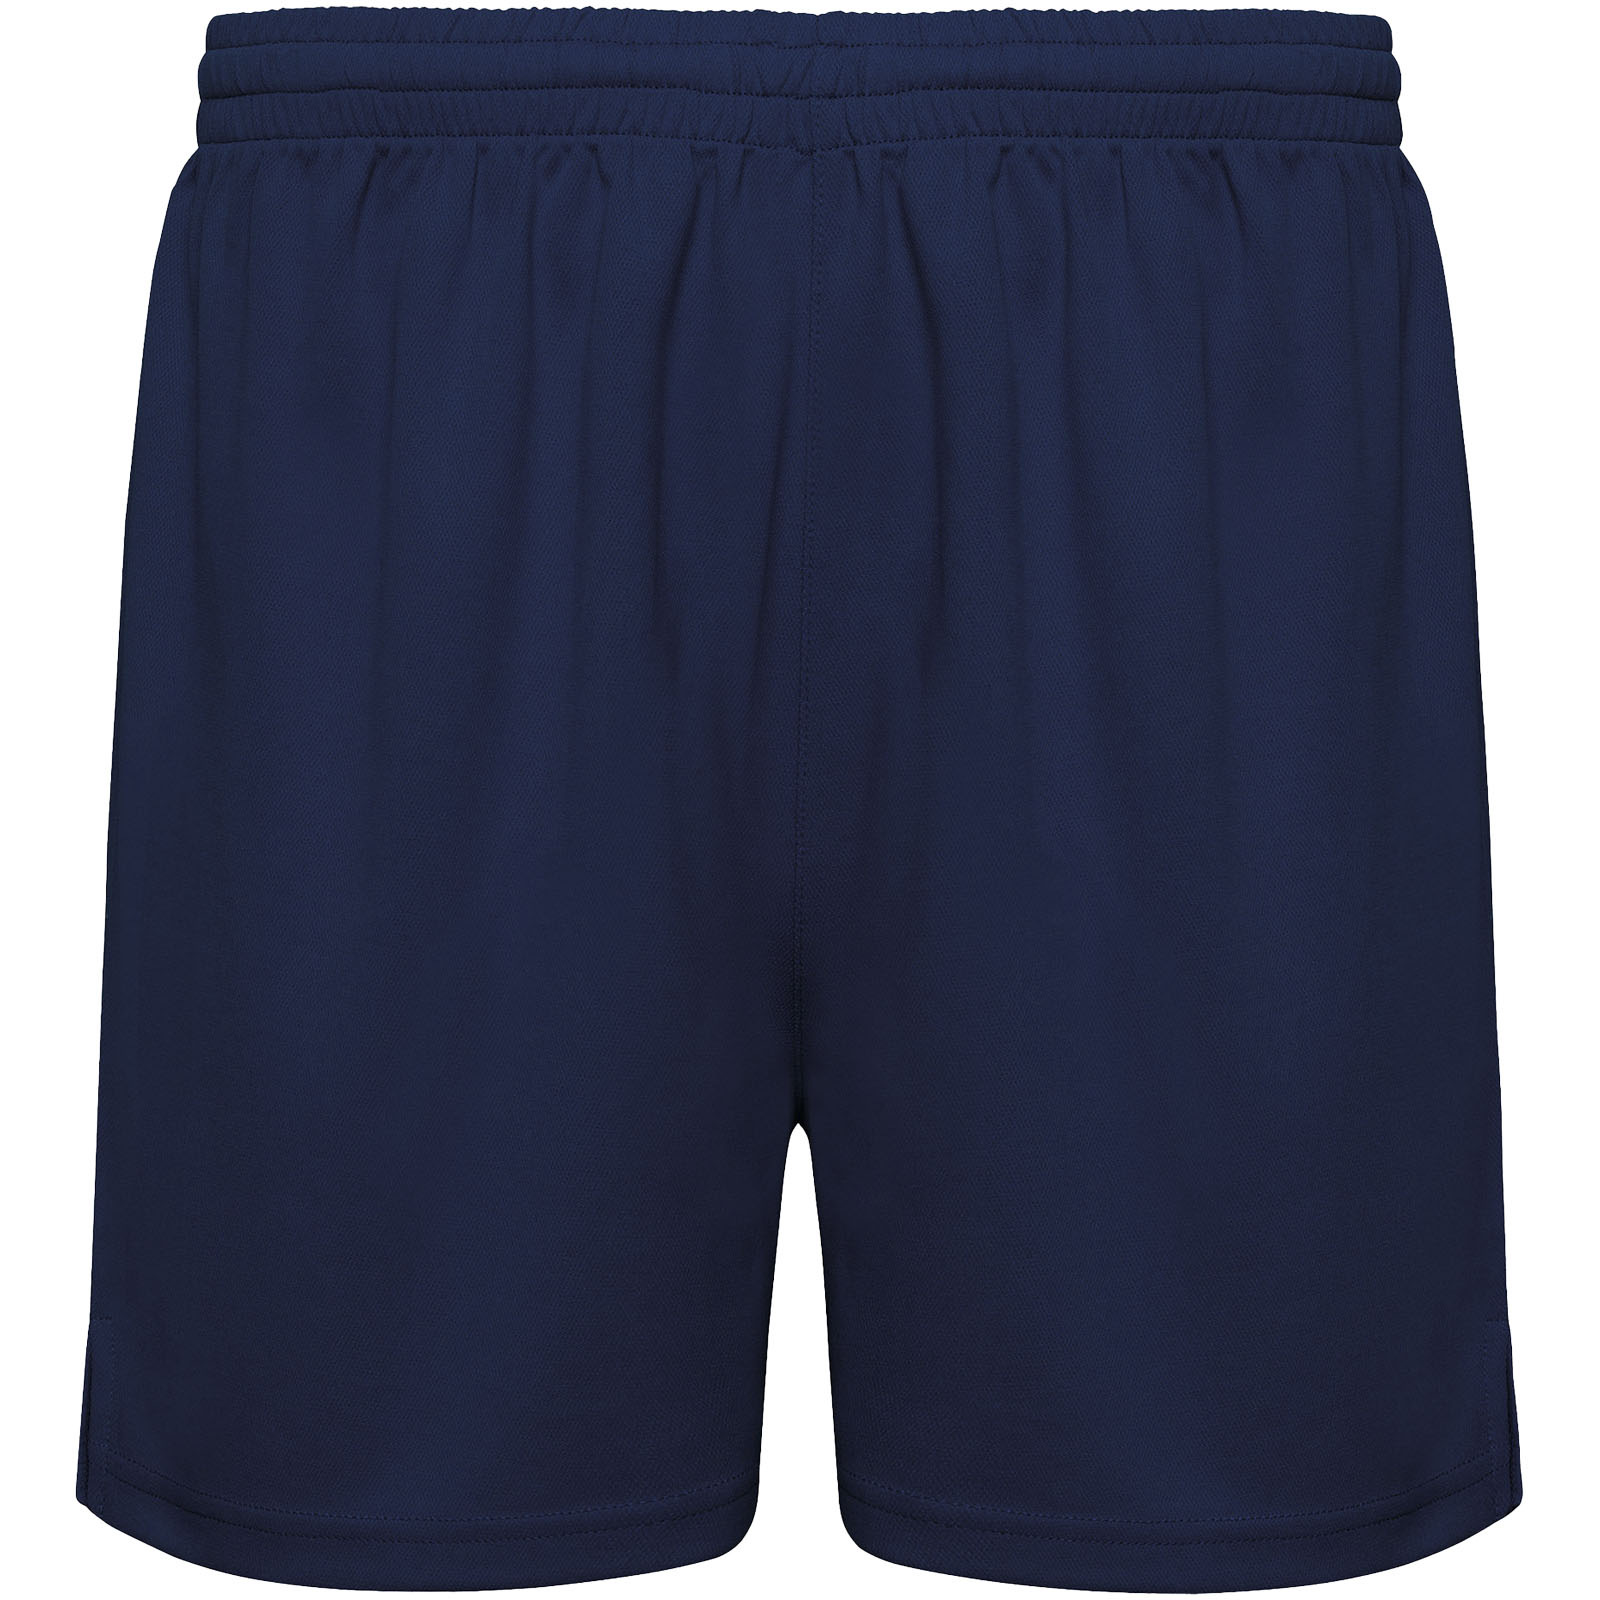 Clothing - Player unisex sports shorts